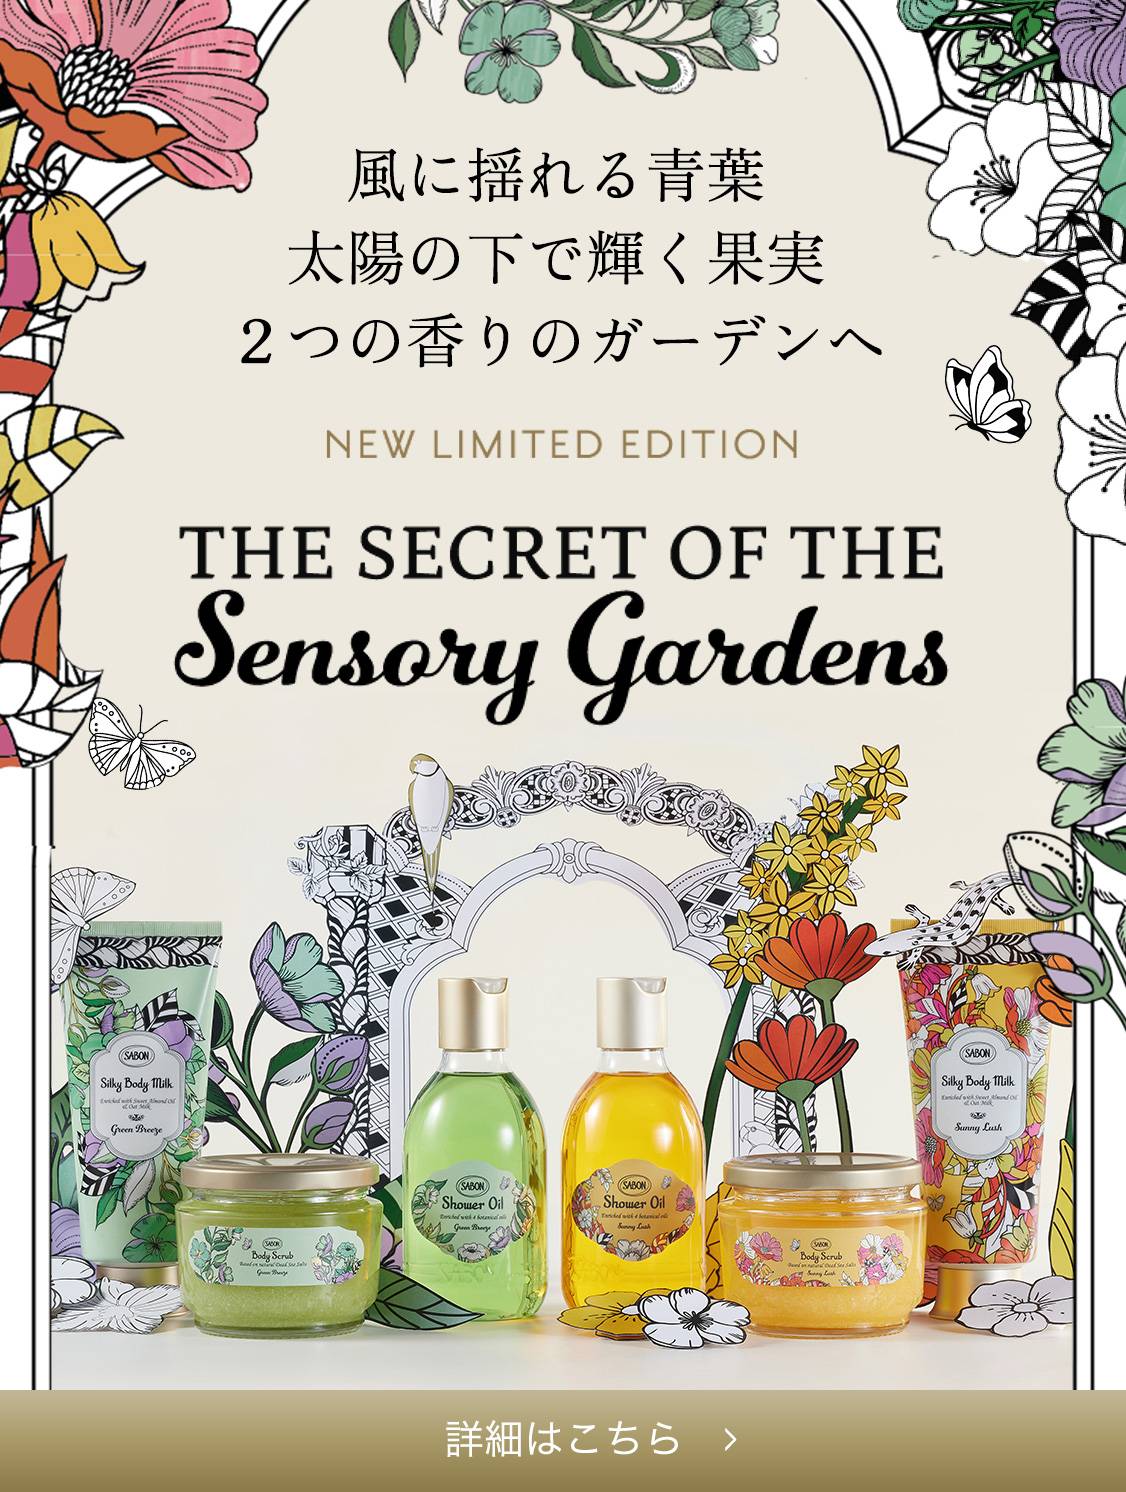 風に揺れる青葉、太陽の下で輝く果実2つの香りのガーデンへ THE SECRET OF THE Sensory Gardens 4/18 Thu In Stores!